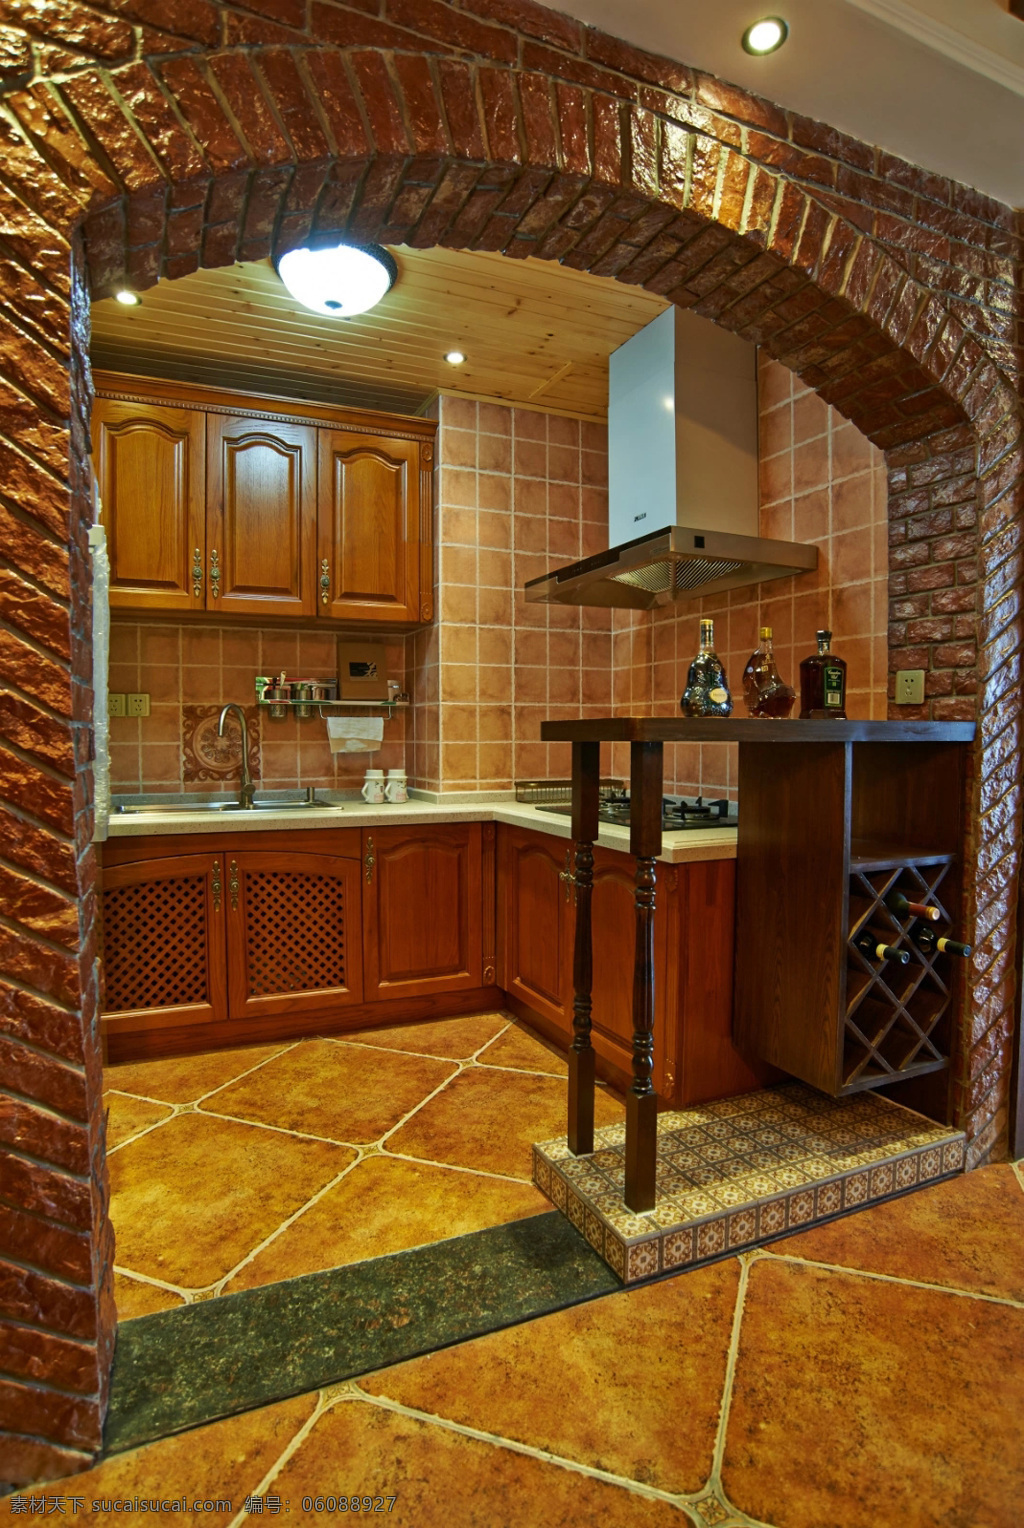 复古 风 室内设计 厨房 拱门 效果图 简约 料理台 红木家具 吧台 现代 家装